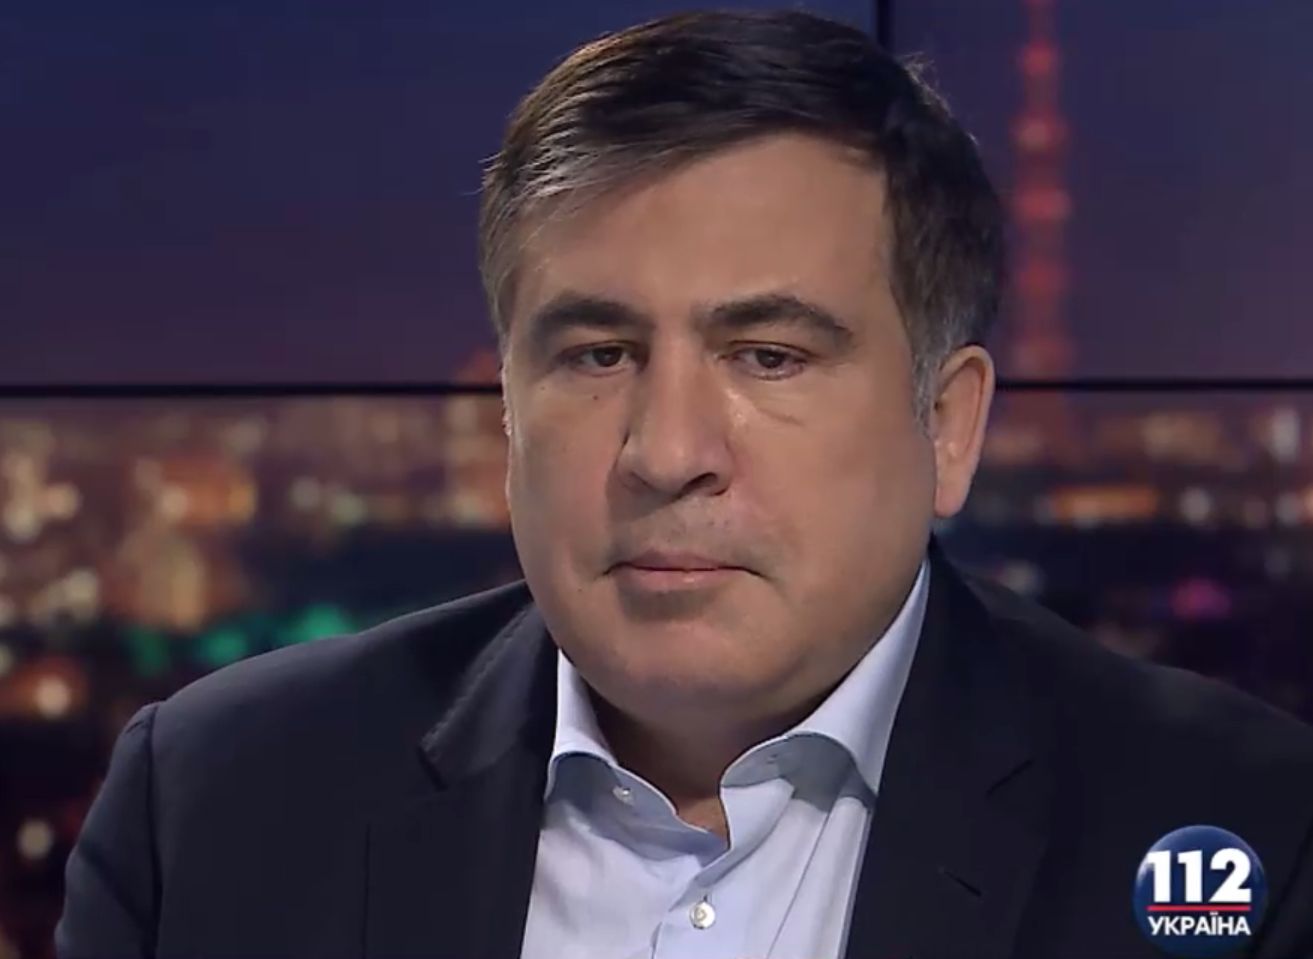 Саакашвили: Если Яценюк удержится на должности, то голосами 2-3 олигархов, которые станут его хозяевами